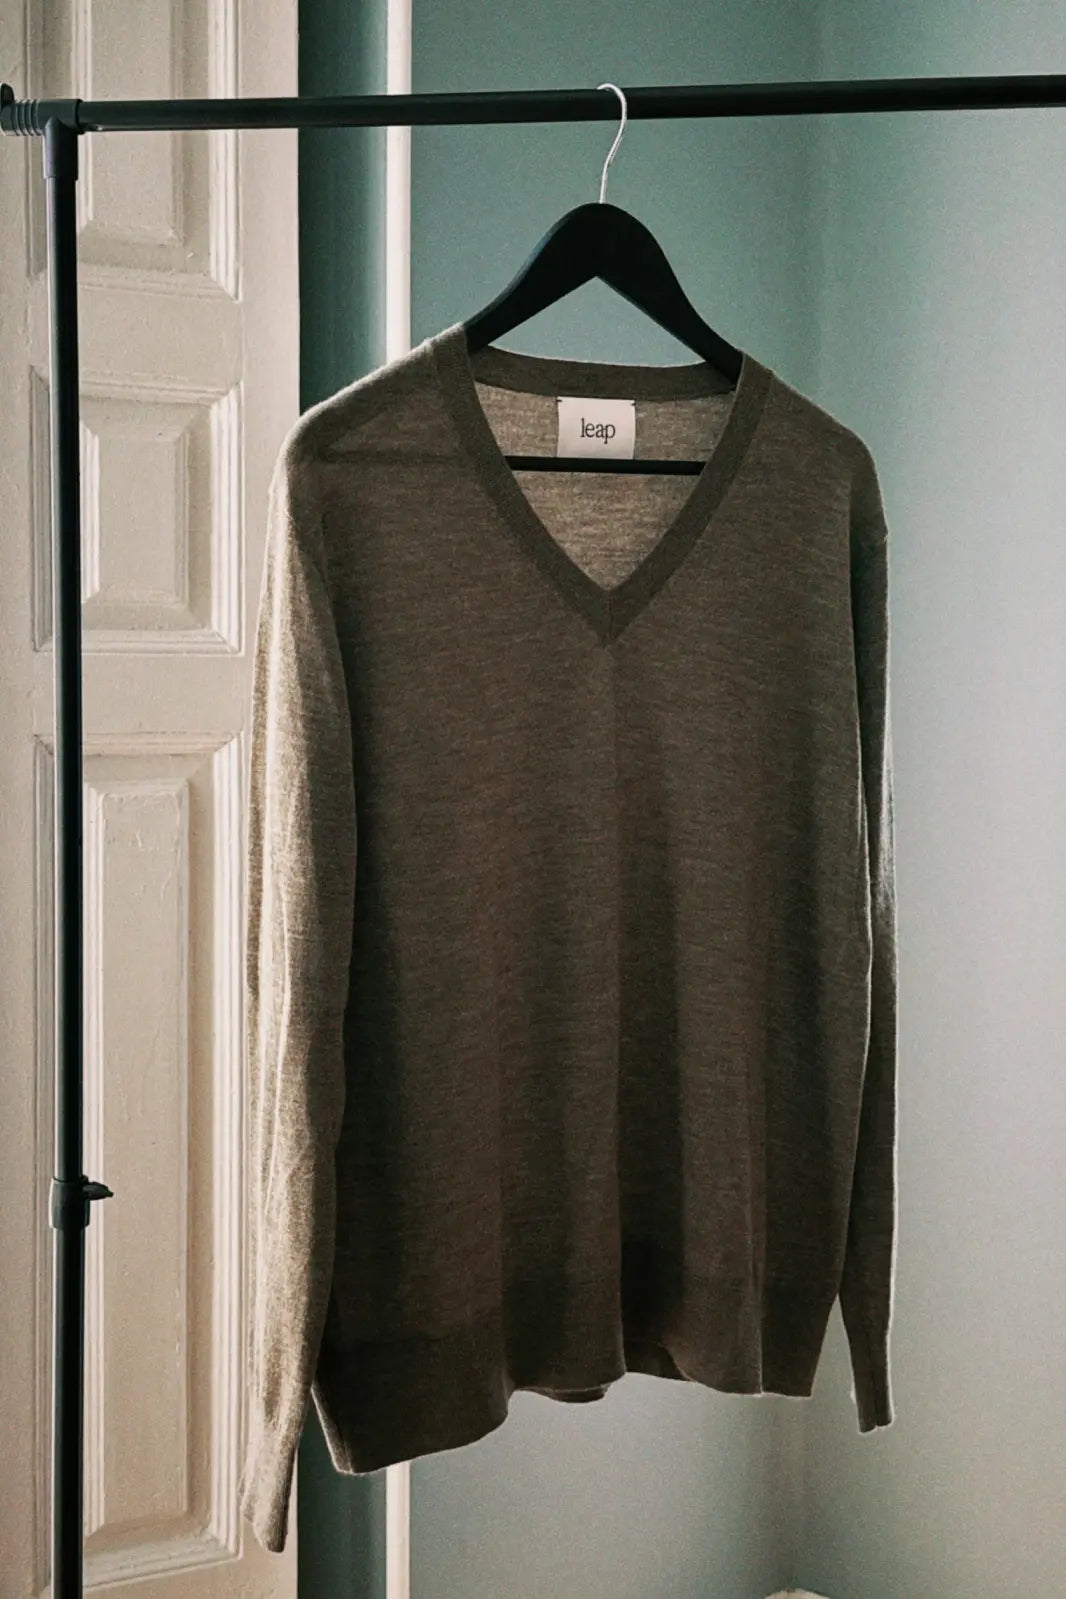 Sample 42 V neck sweater